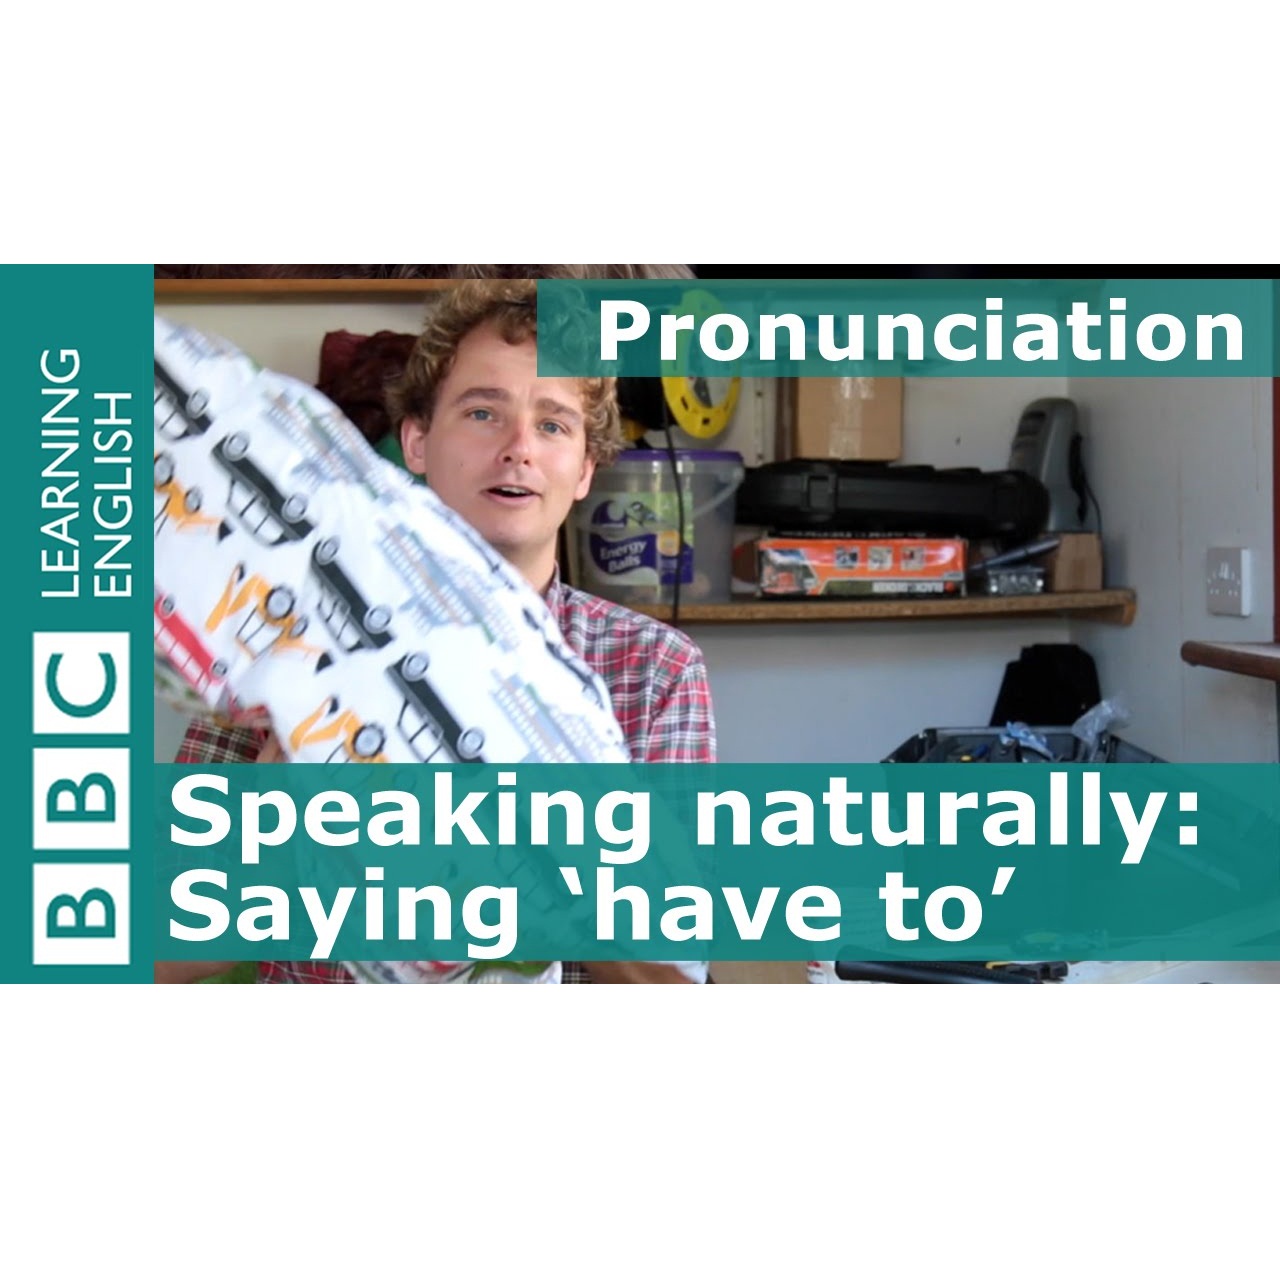 Pronunciation: 'Have to' (Cách phát âm đúng với 